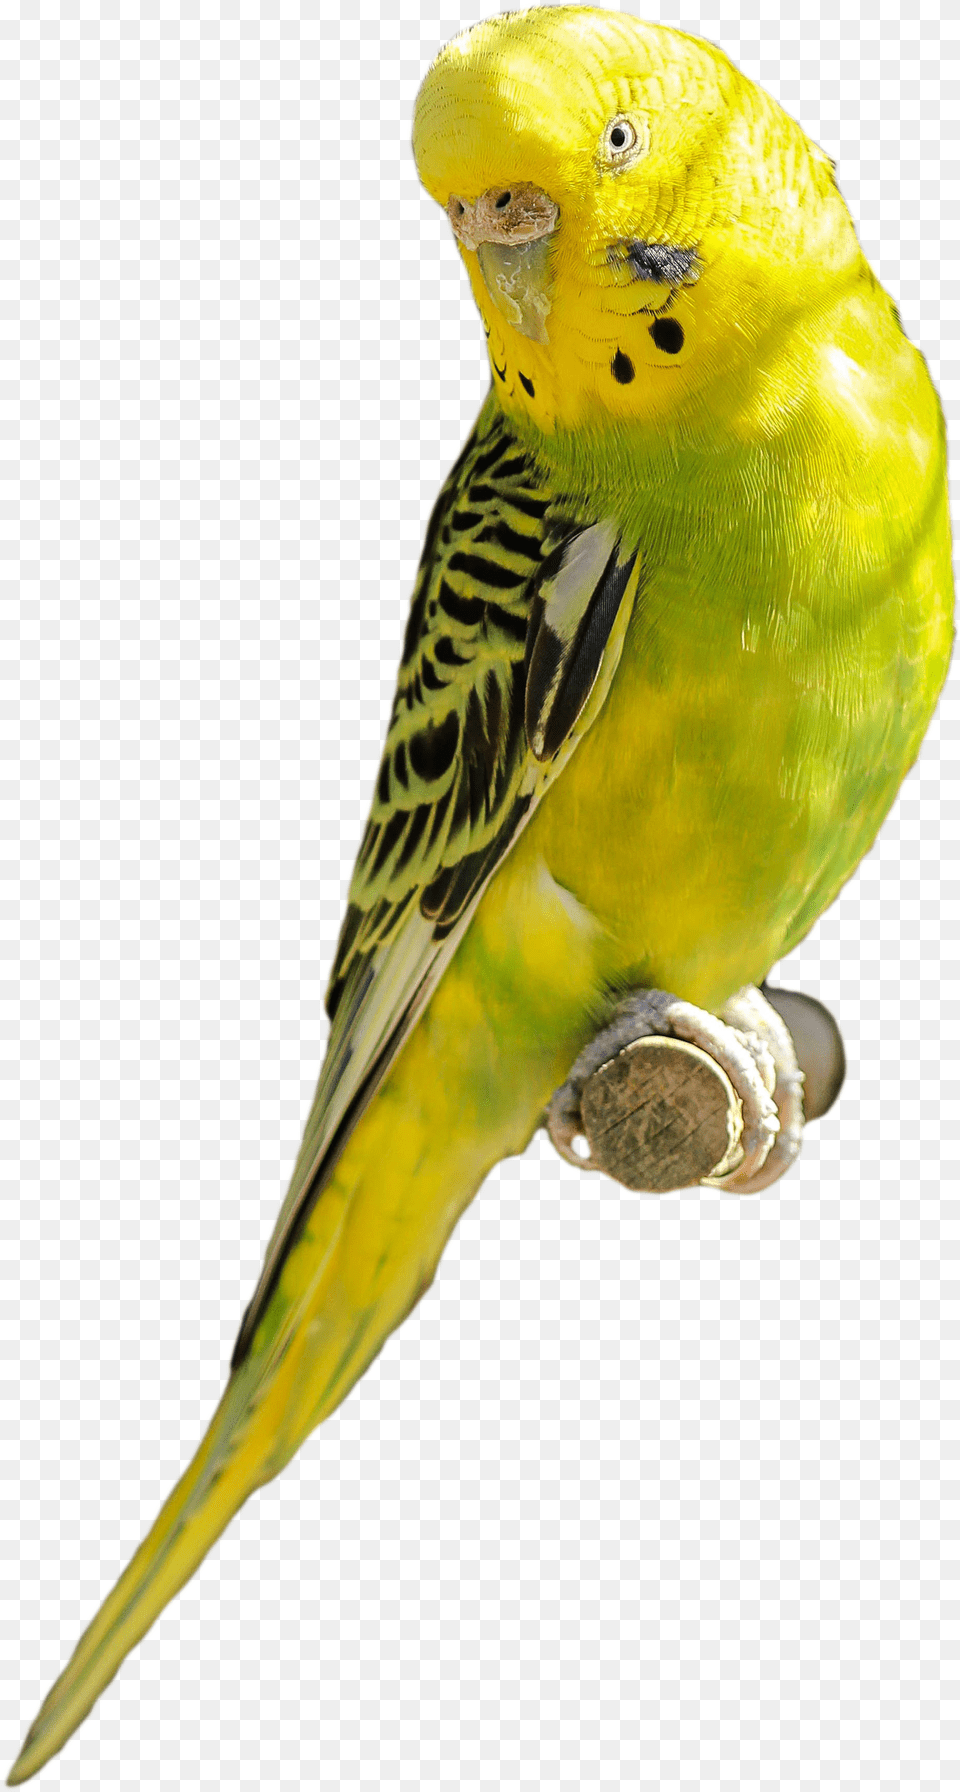 Parakeet Yellow Green Bird Parrot Pet Backgroung Png Image